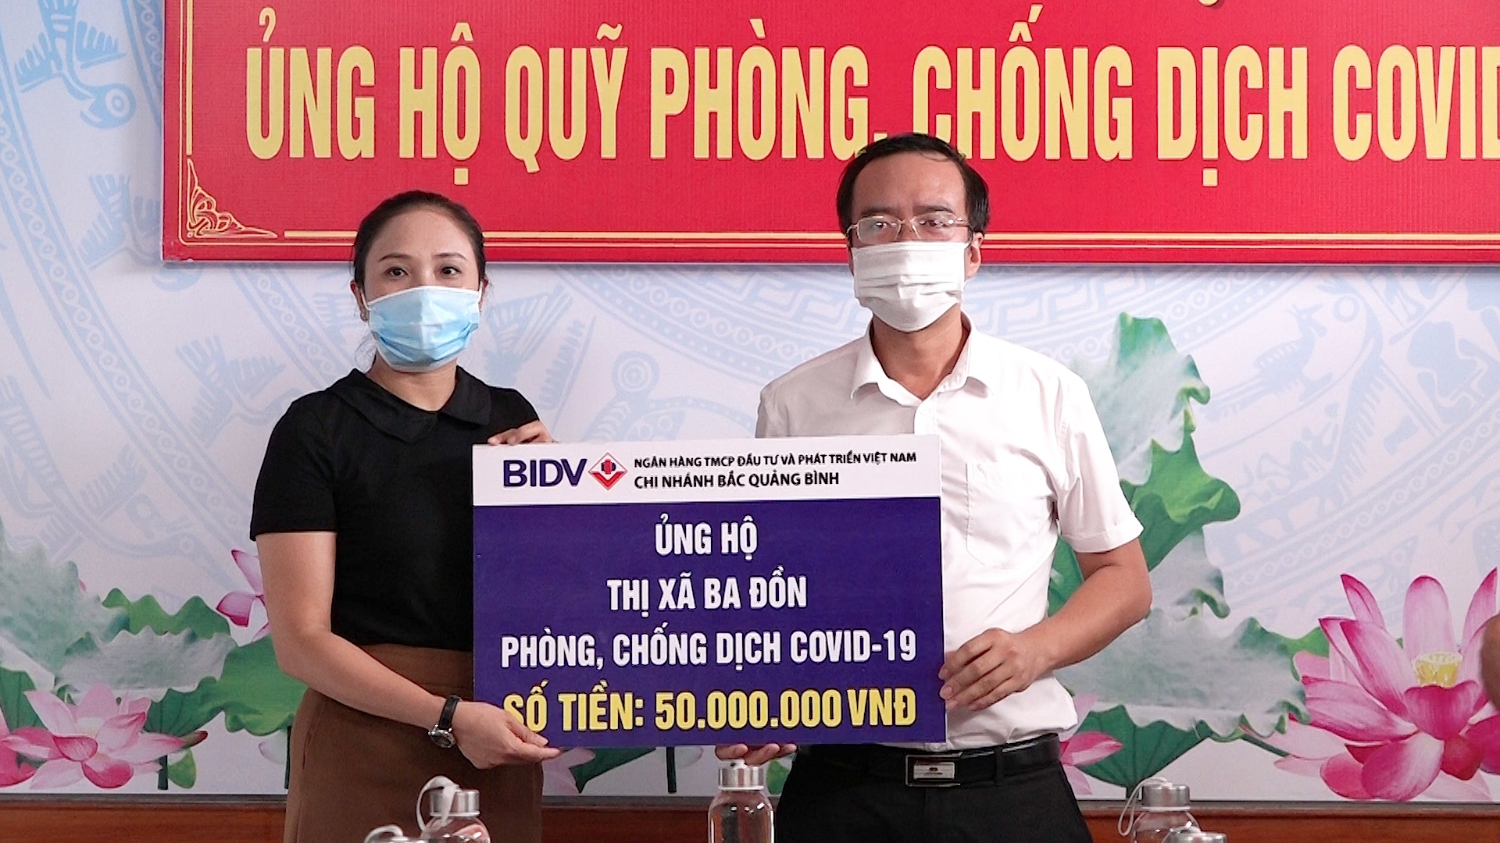 Ngân hàng TMCP Đầu tư và Phát triển Việt Nam chi nhánh Bắc Quảng Bình ủng hộ quỹ phòng chống dịch Covid 19